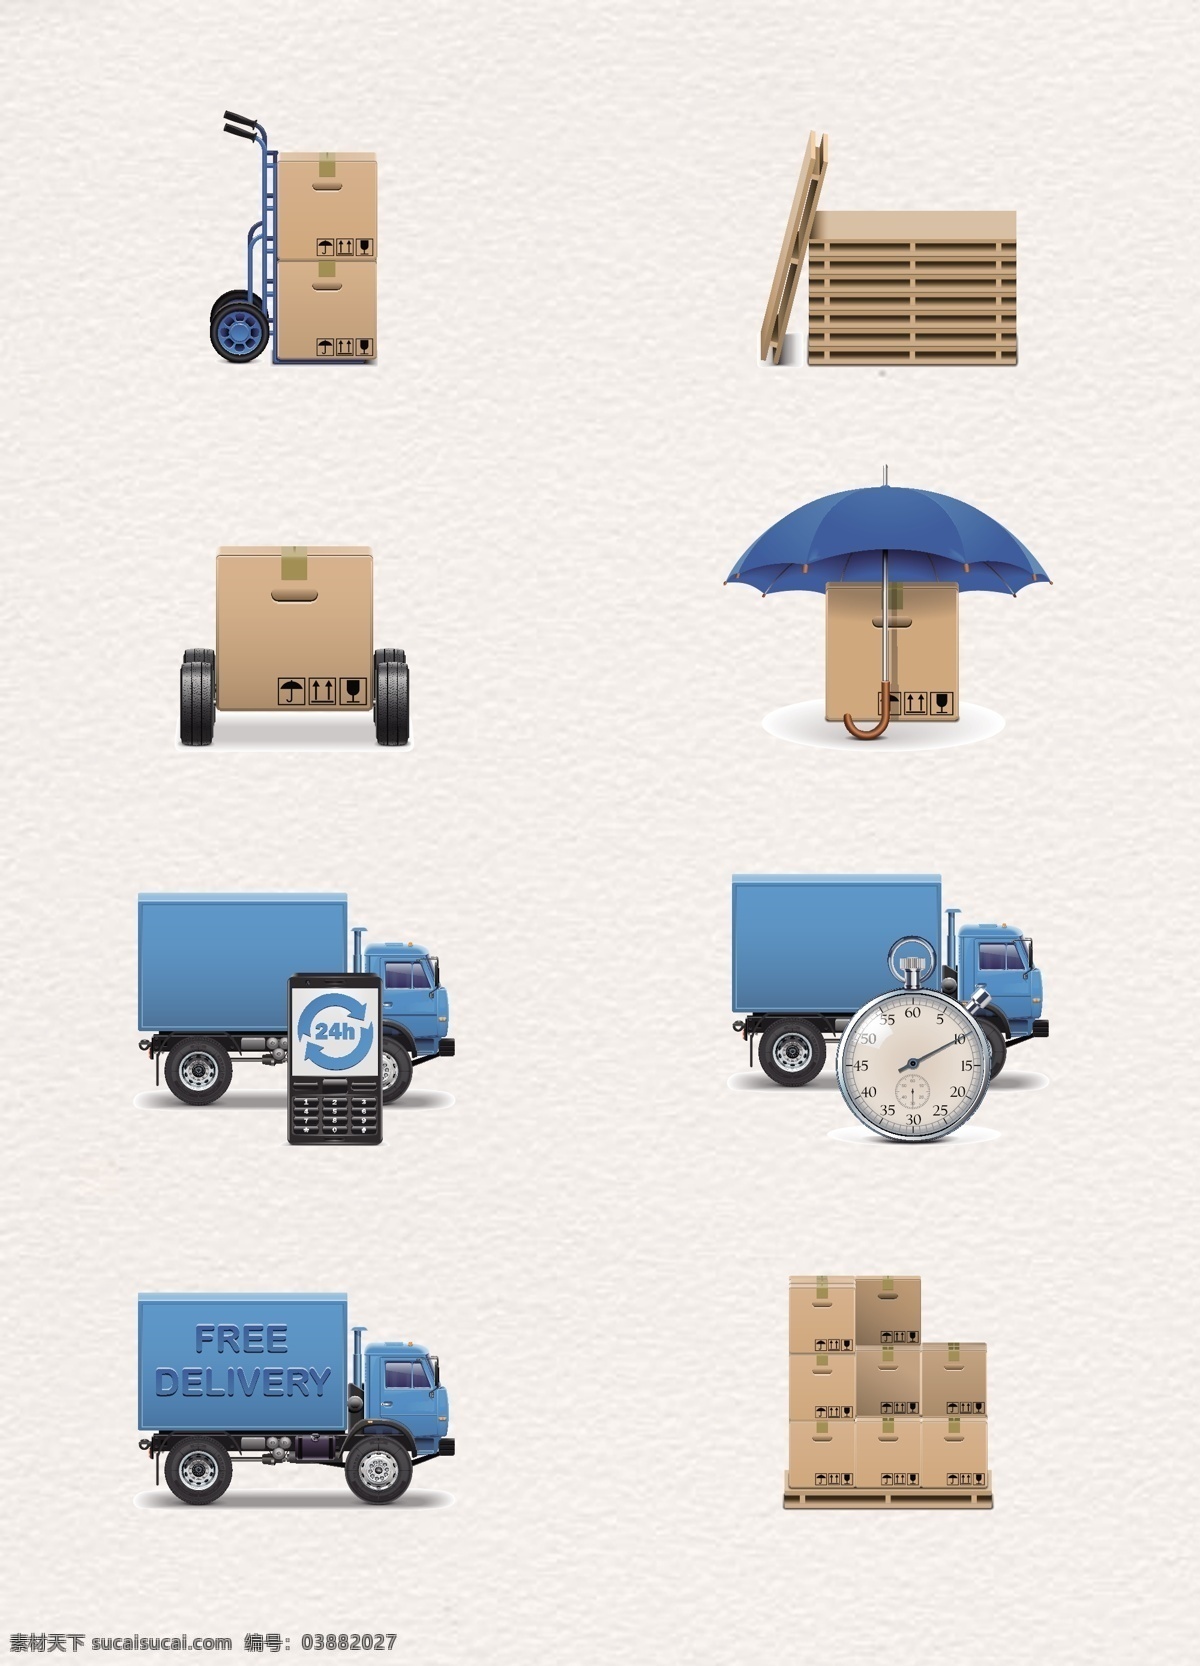 货运 物流运输 快递 物流 纸箱 货车 汽车 交通工具 货物 运输 集装箱 货架 矢量